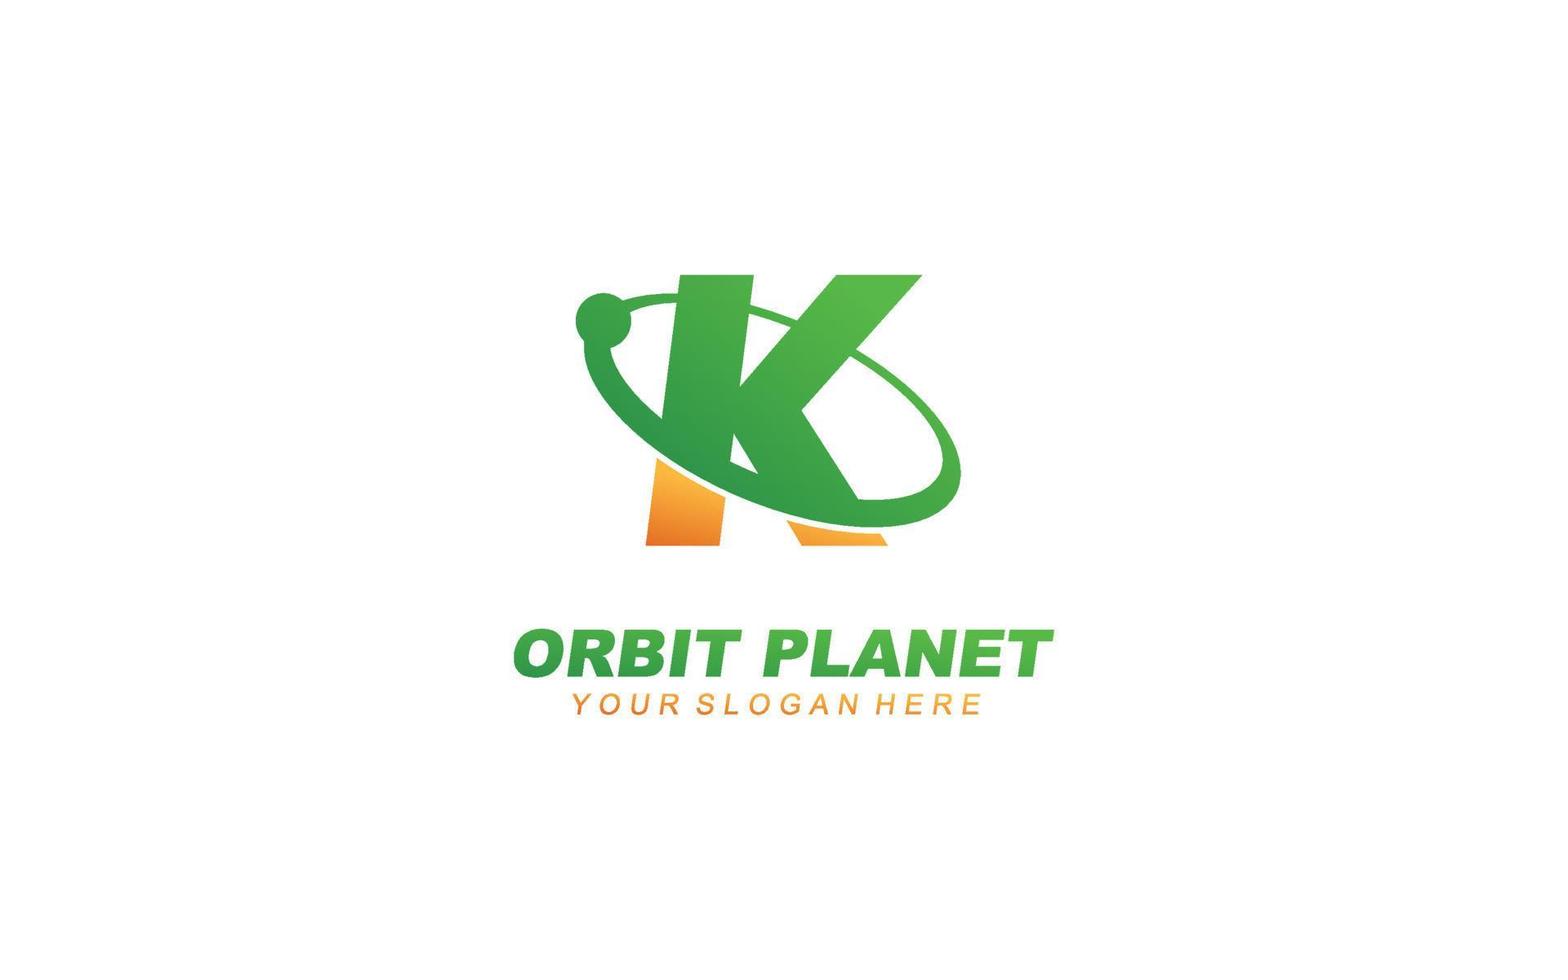 K planet logo design inspiration. Vector letter template design for brand.